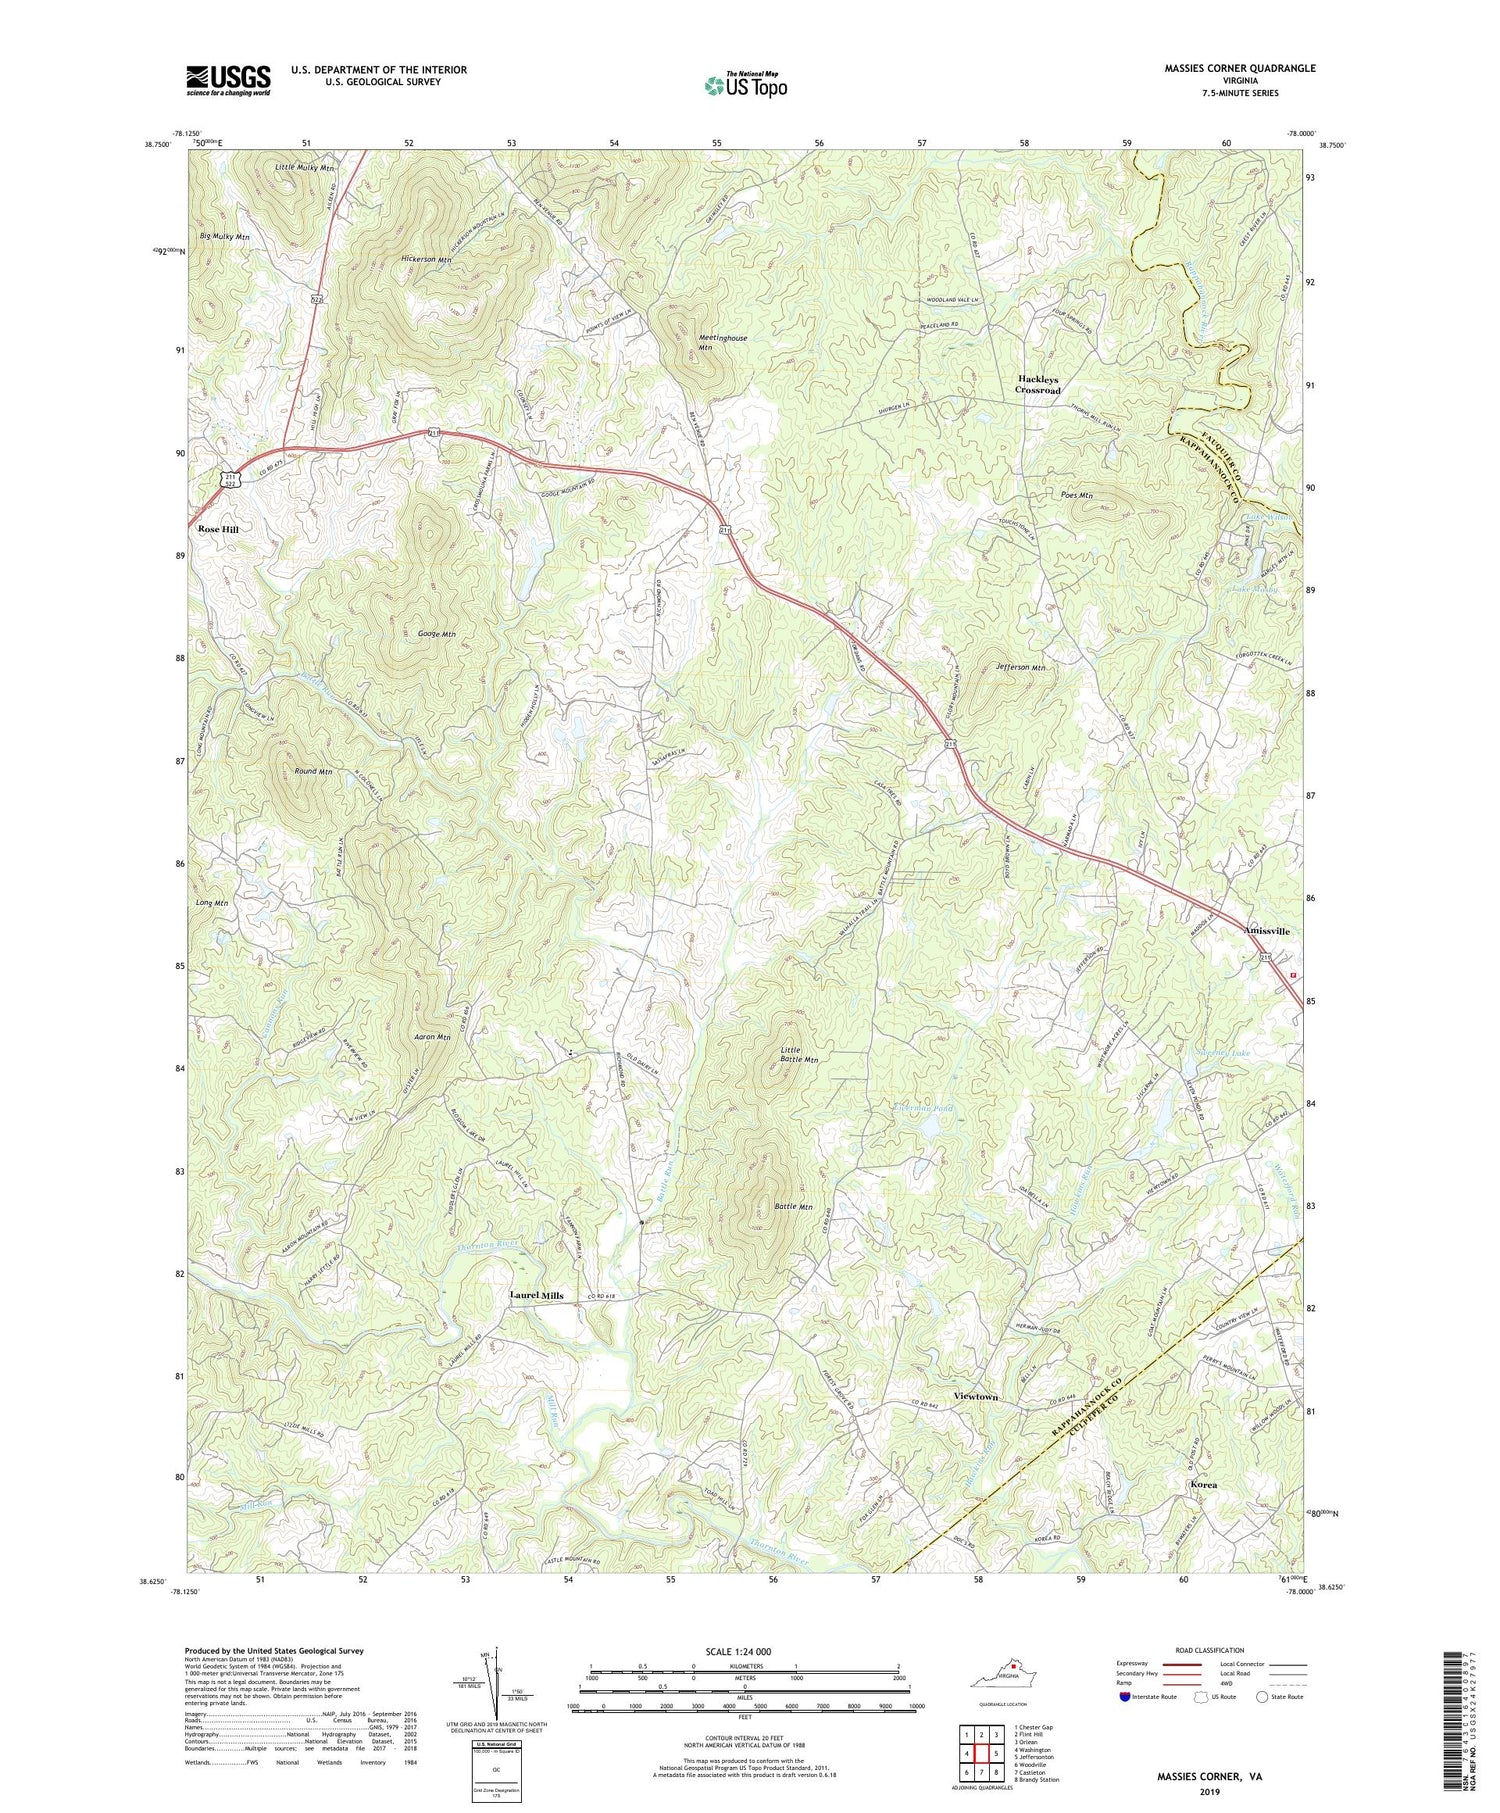 Massies Corner Virginia US Topo Map Image